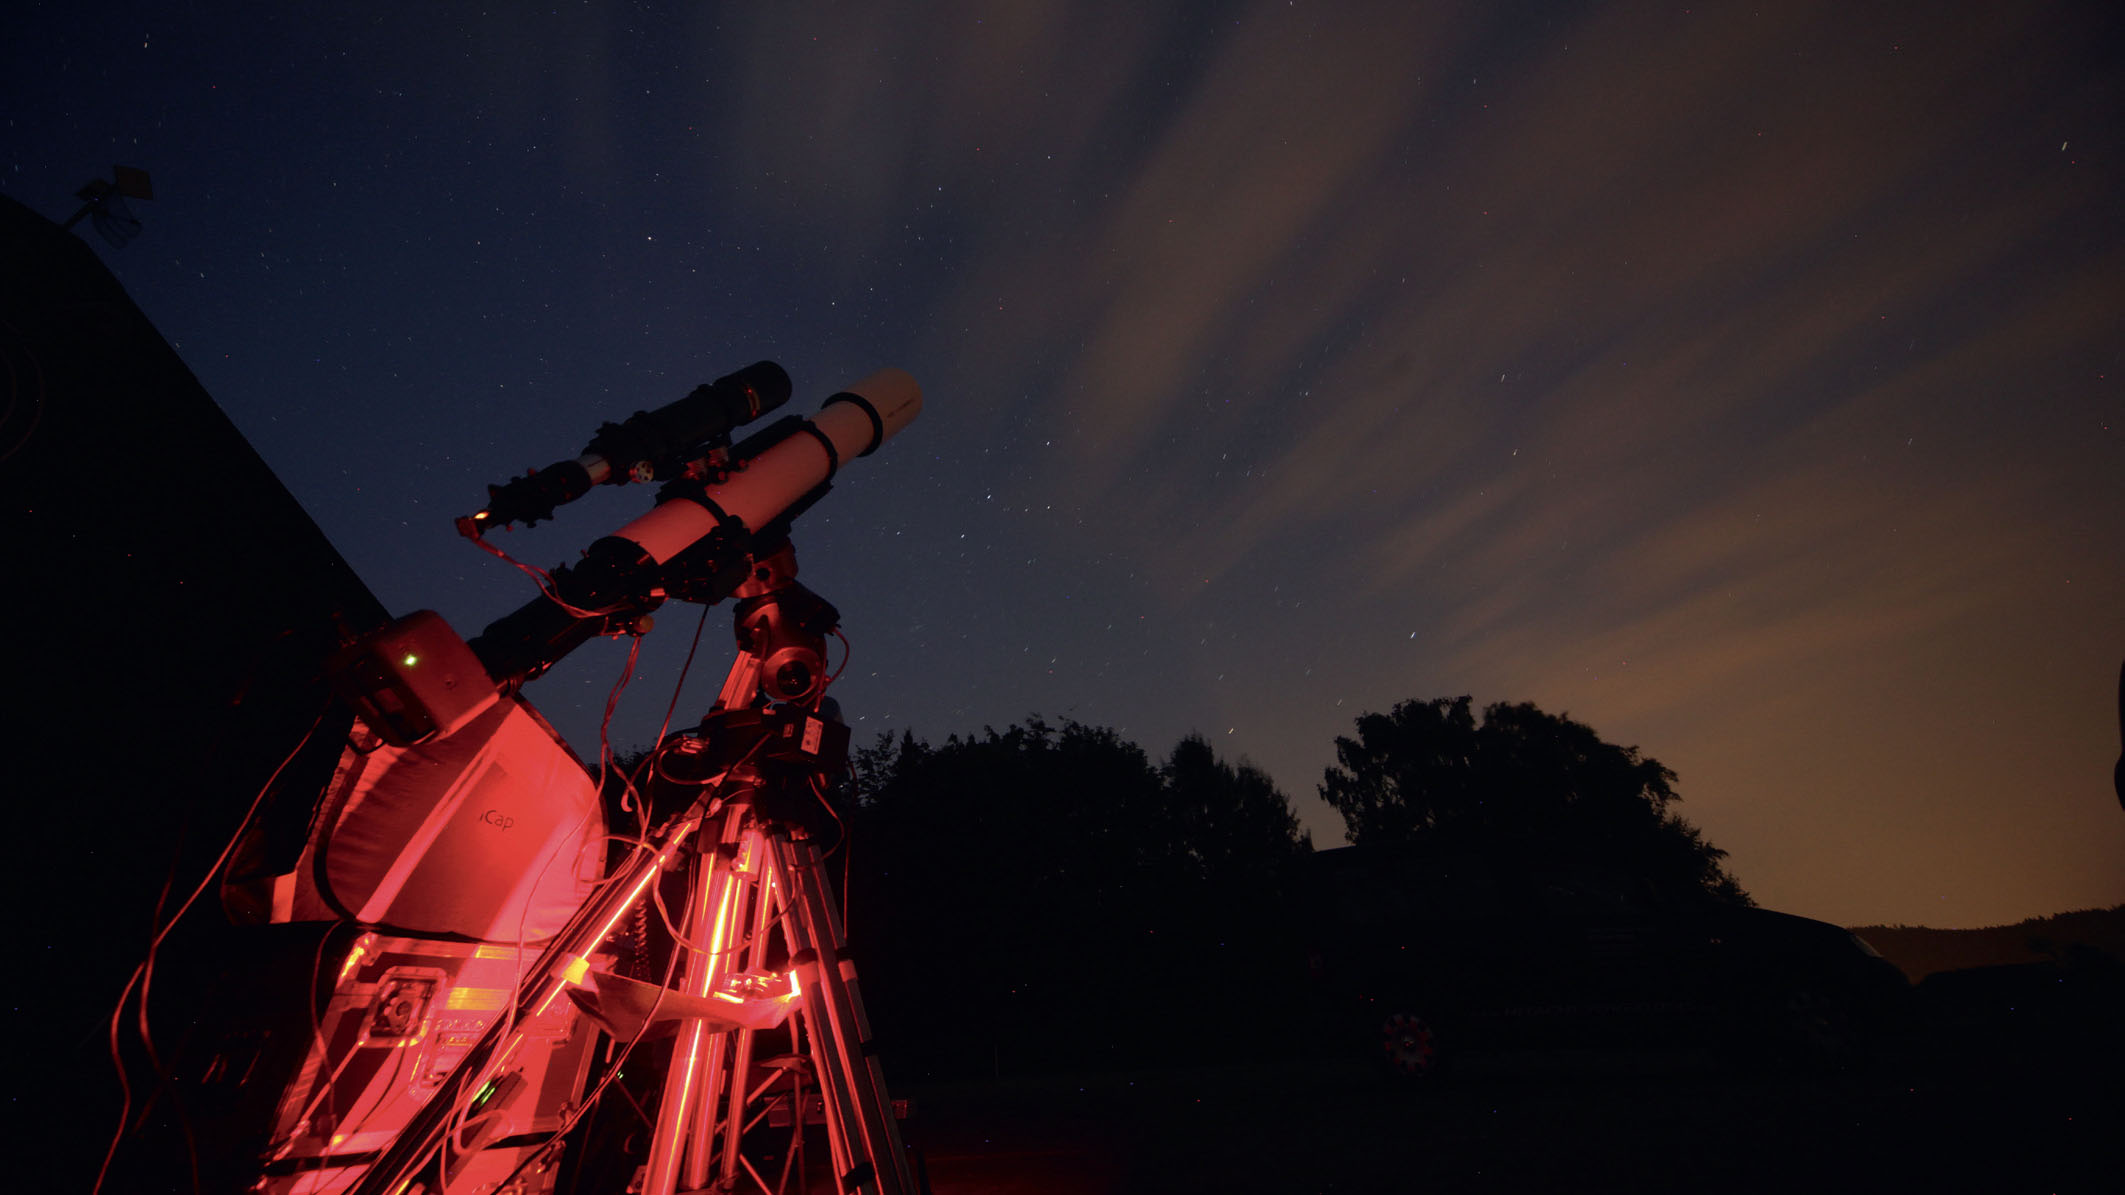 Zielsicher zu tief belichteten Aufnahmen: Teleskop
mit Autoguiding-Equipment in Aktion. Mario Weigand